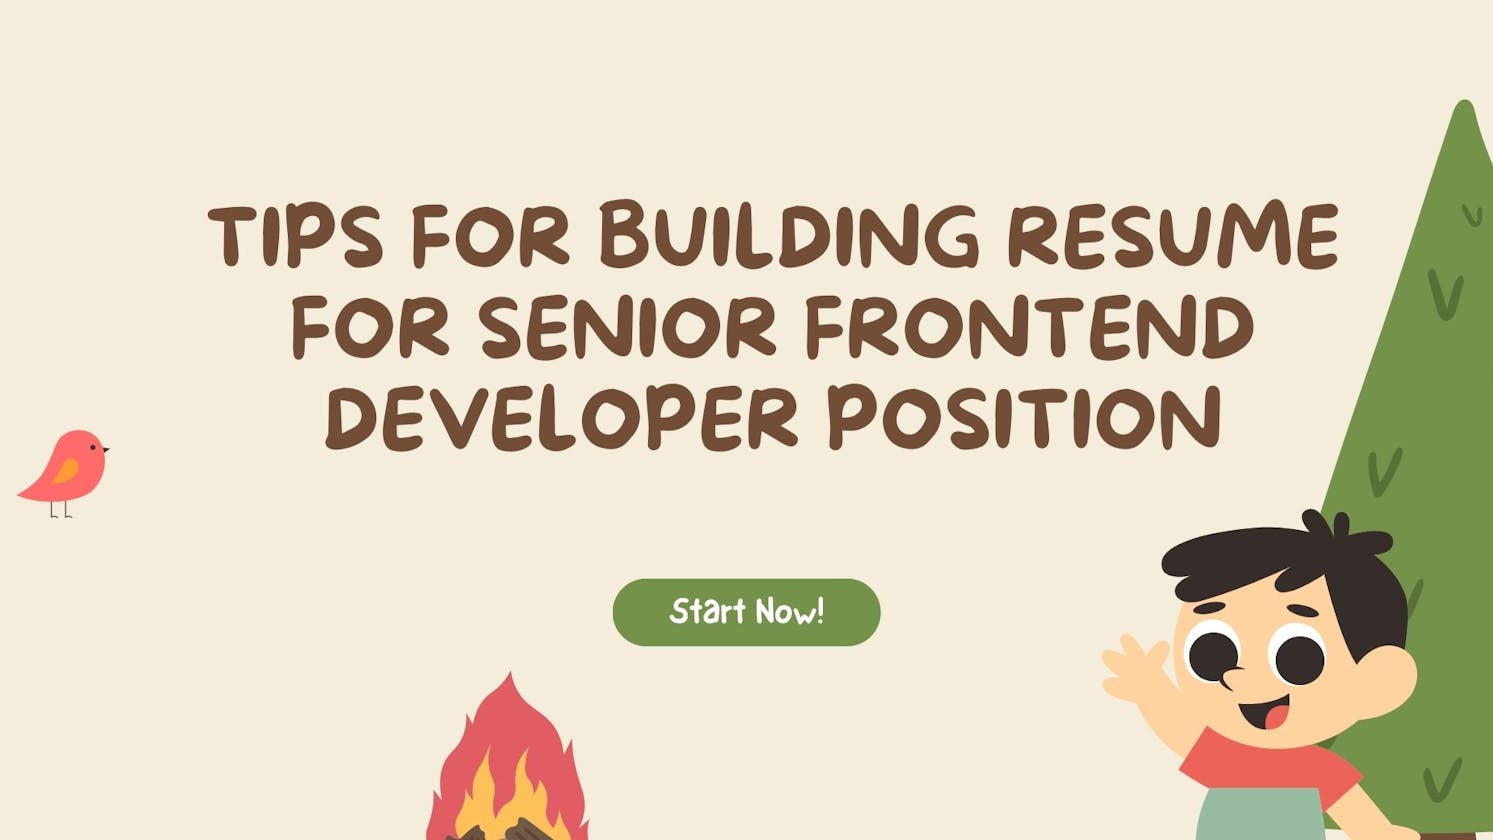 Tips for building resume for senior frontend developer position